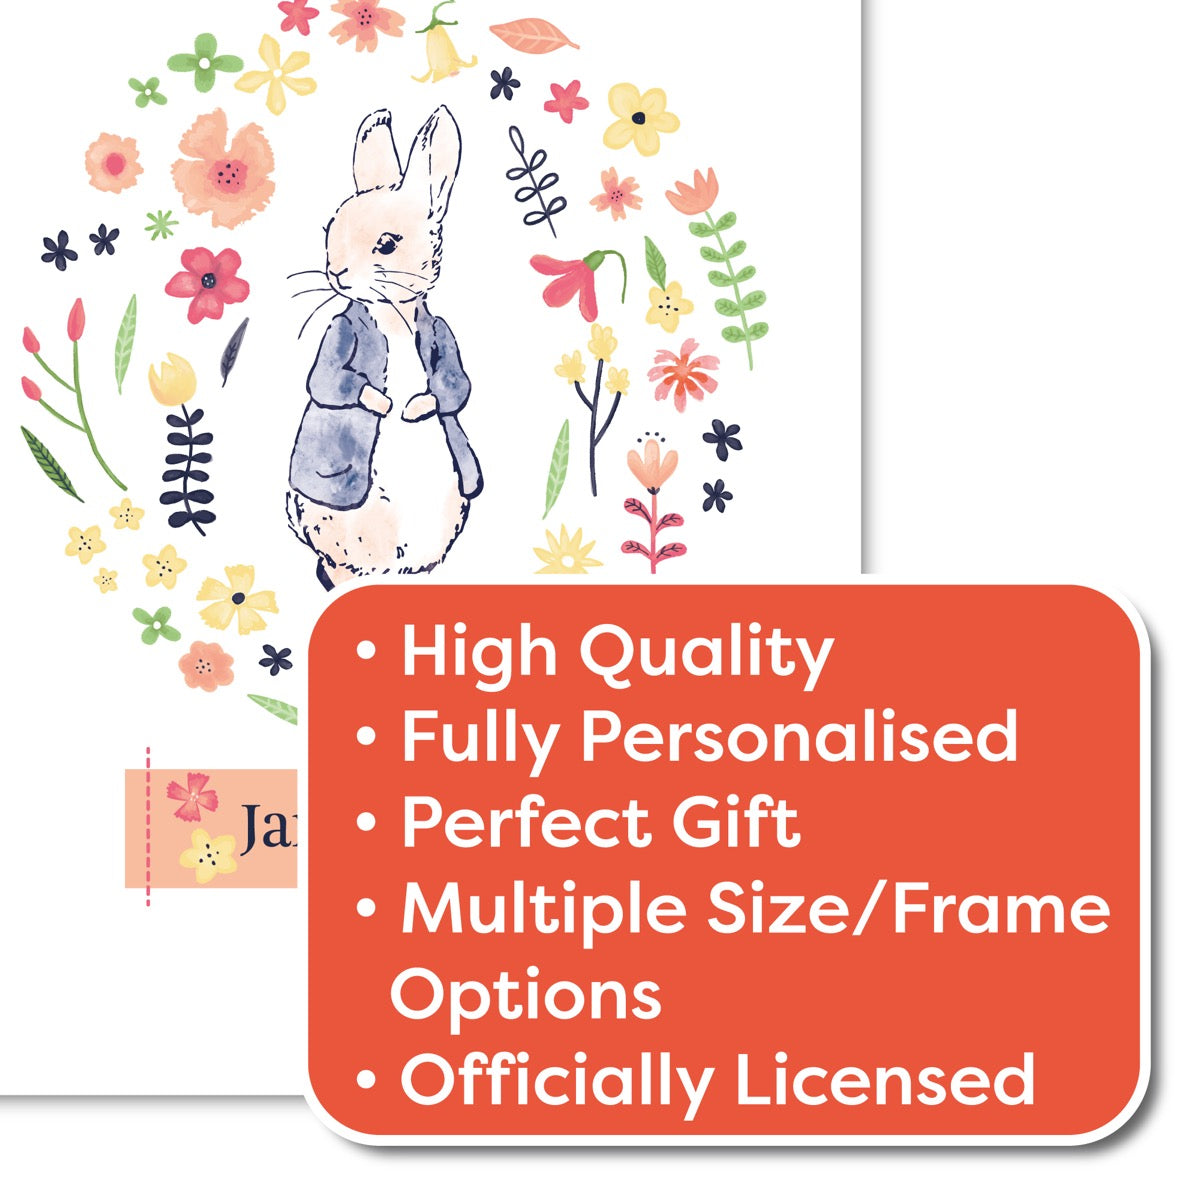 Peter Rabbit Print - Flower Circle Personalised Name Print Baby Nursery Art